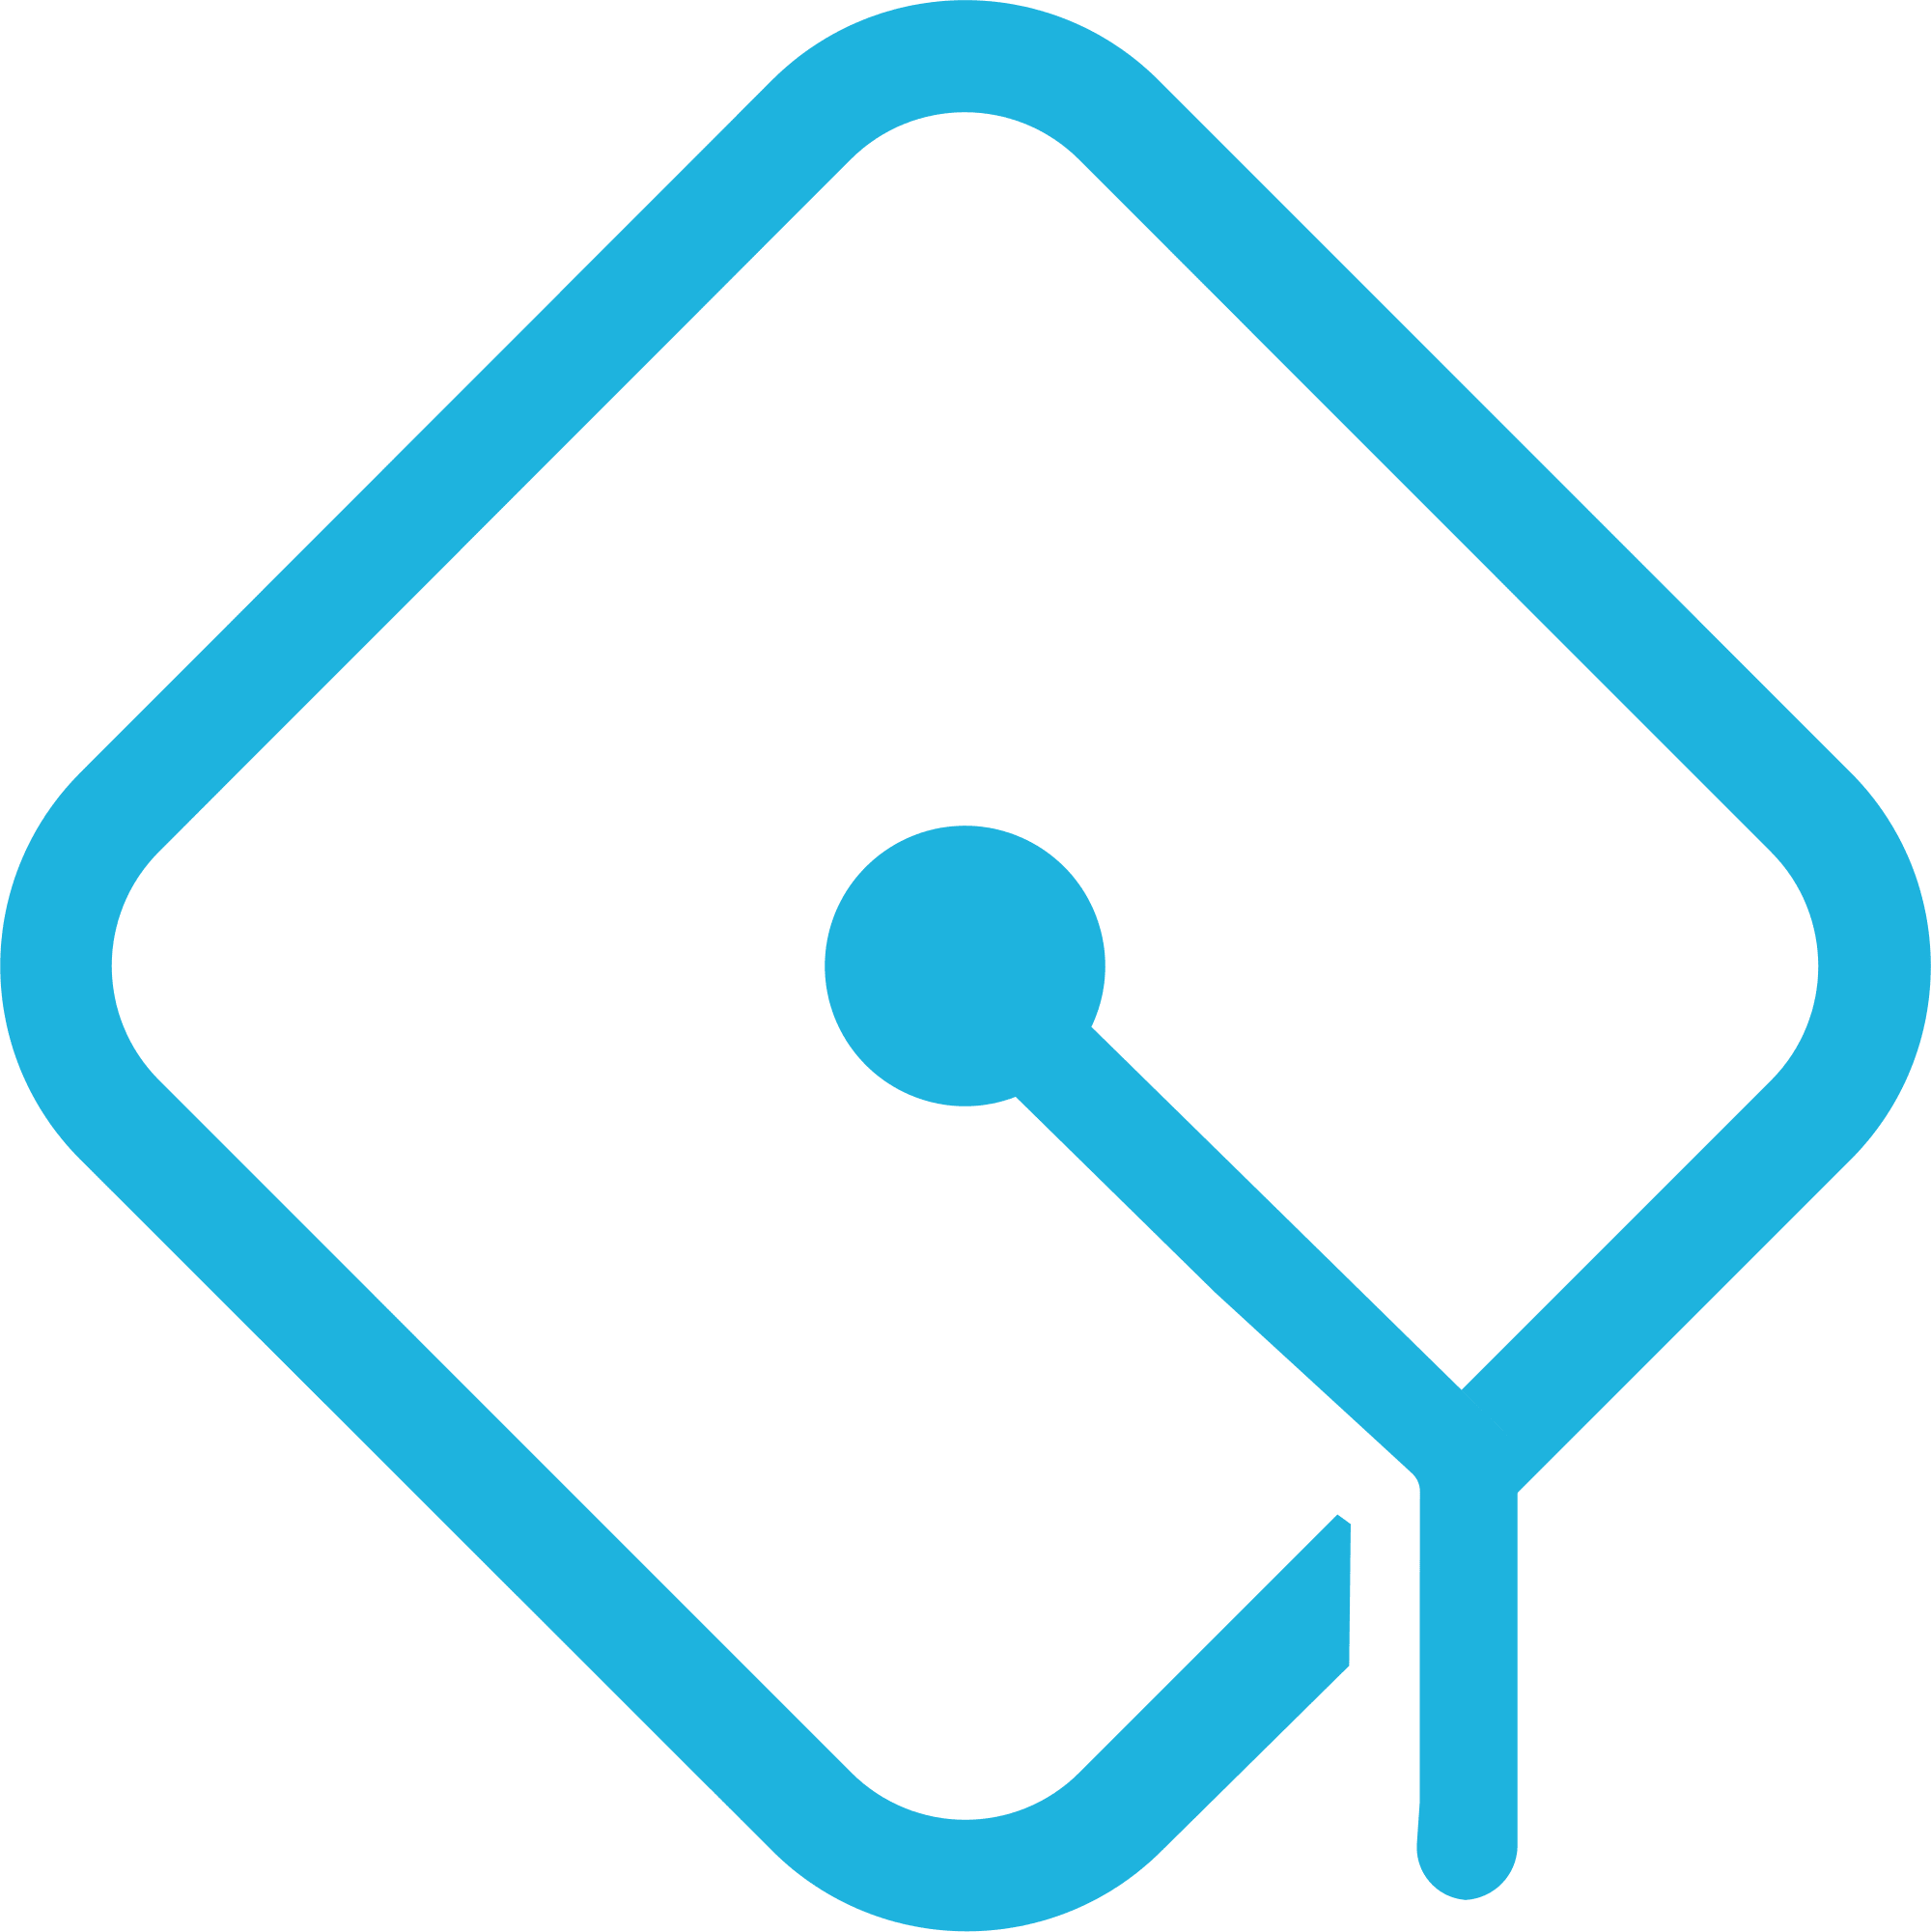 ODEM logo in png format